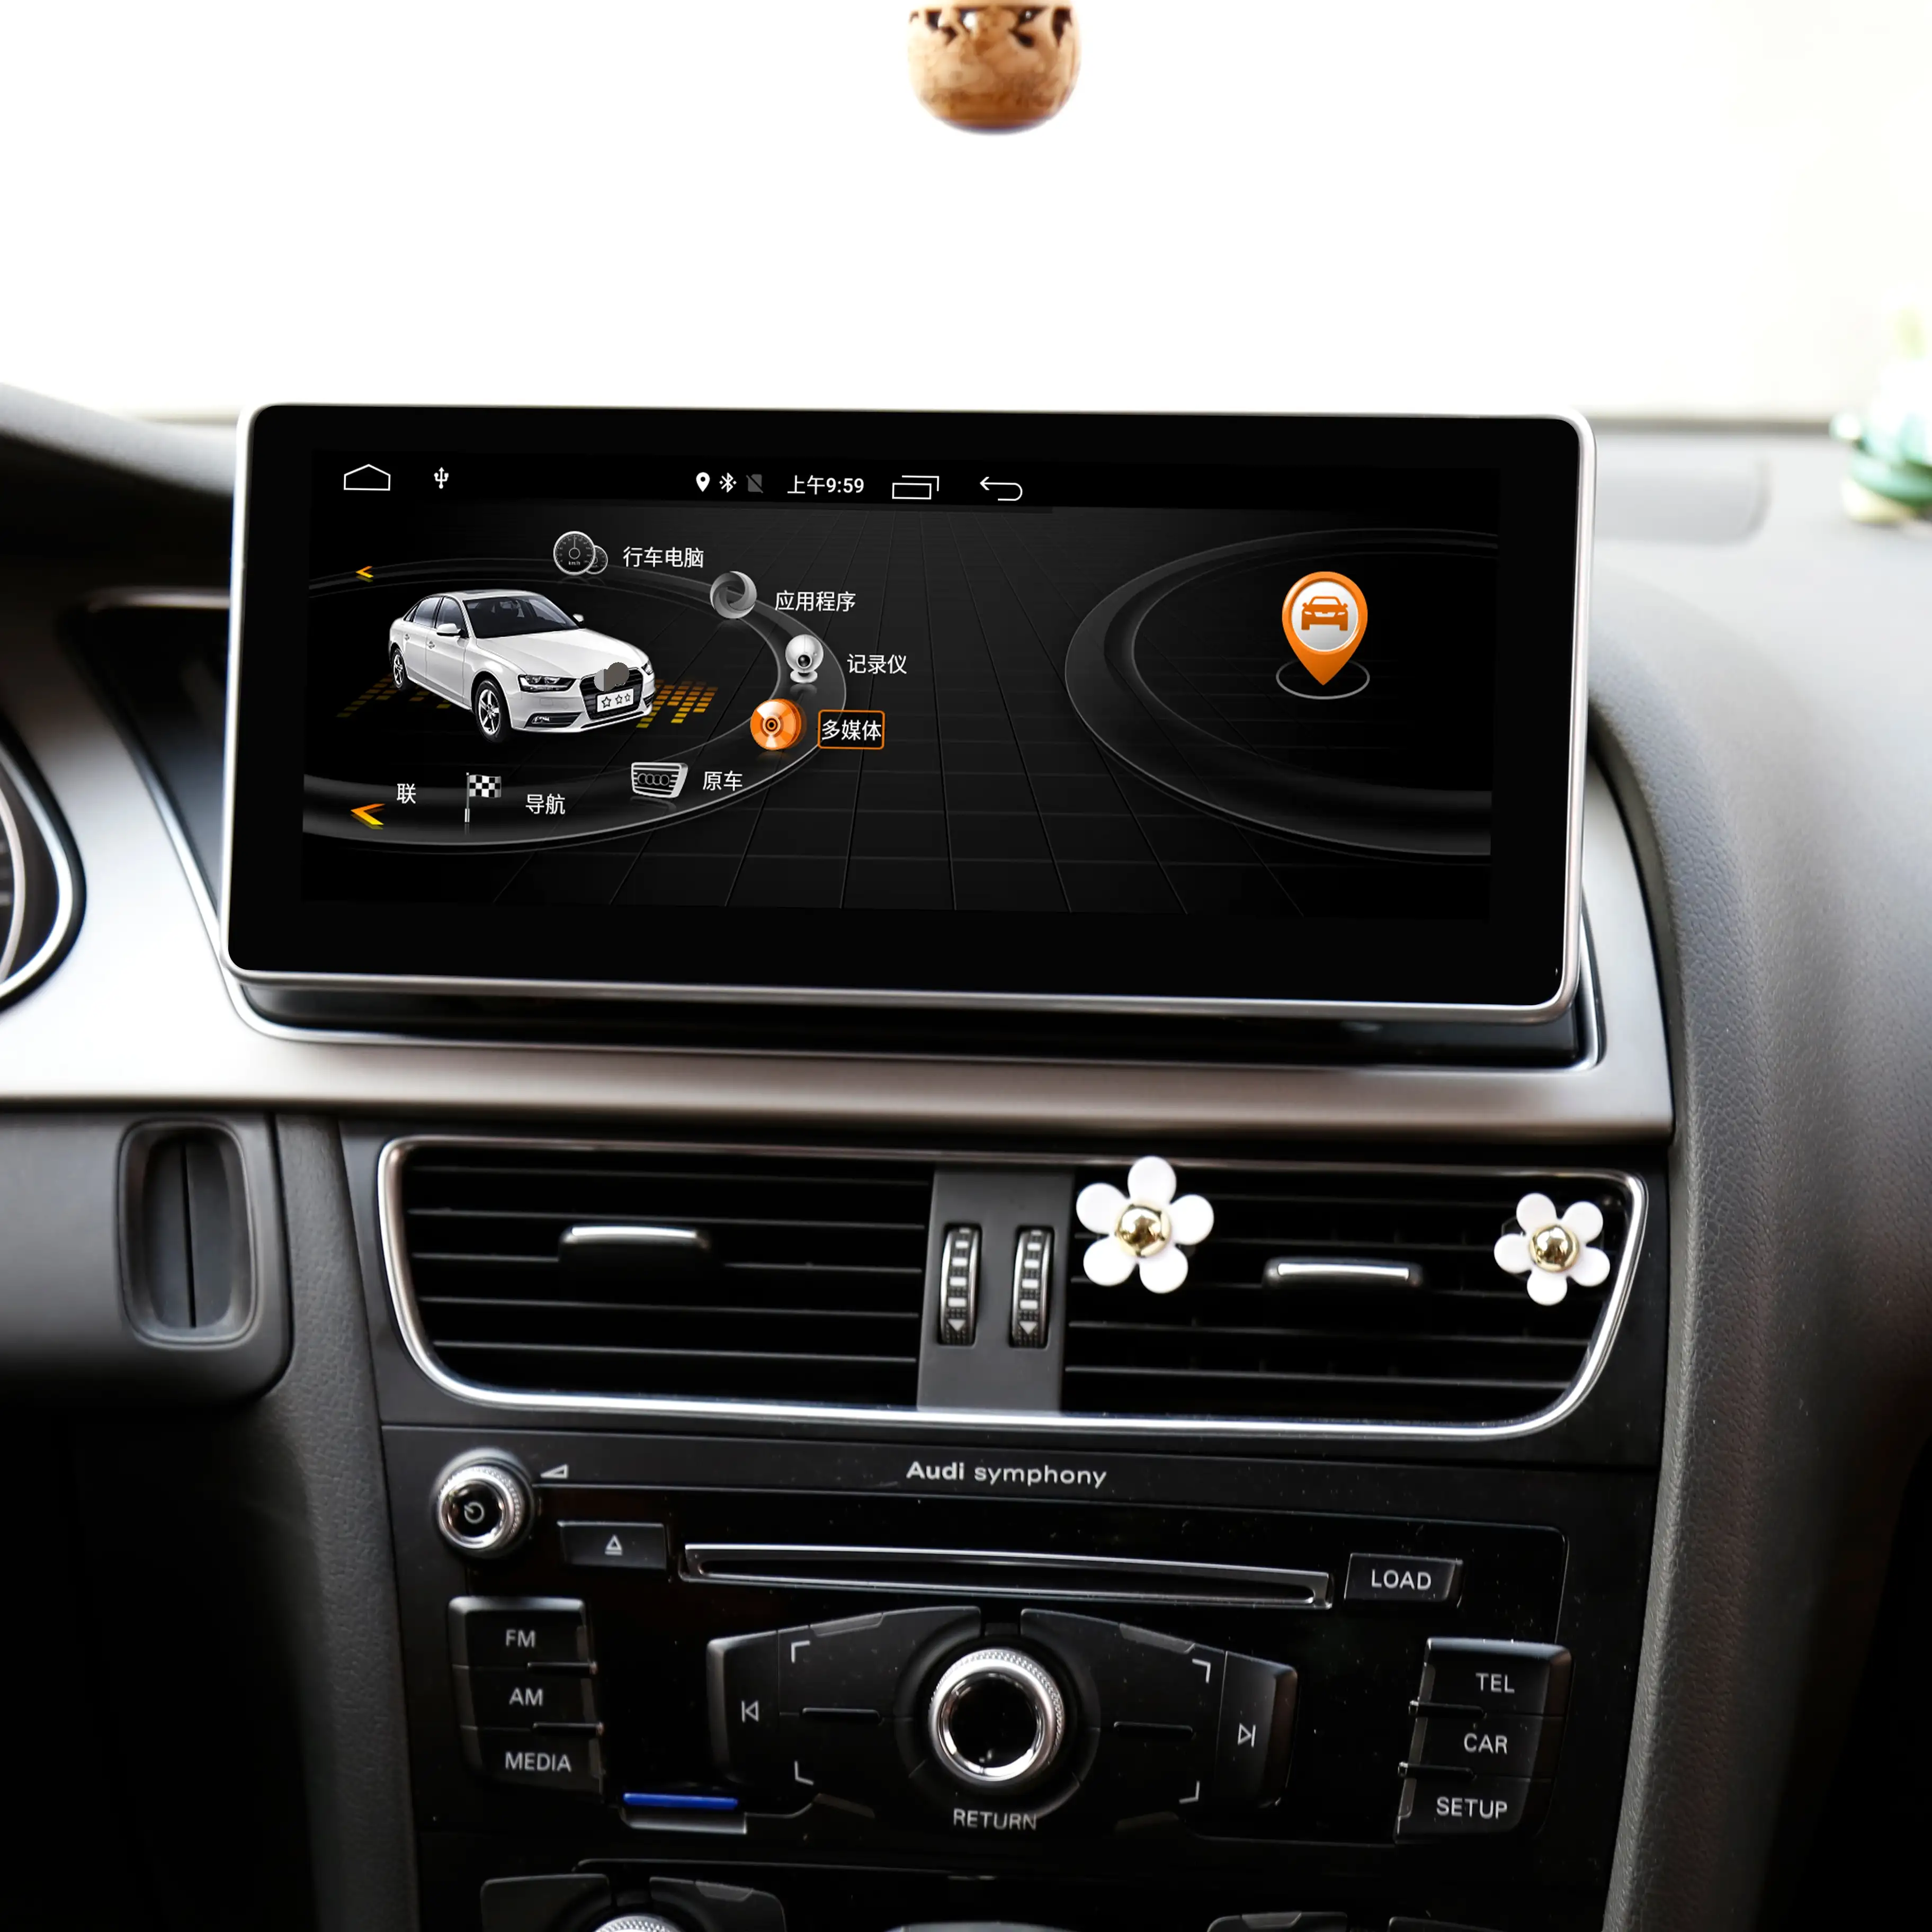 Tableau de bord avec écran tactile de 10.25 pouces, autoradio, multimédia, avec navigation GPS, 4G LTE, wifl, pour Audi Q5 high, 2009 — 2016